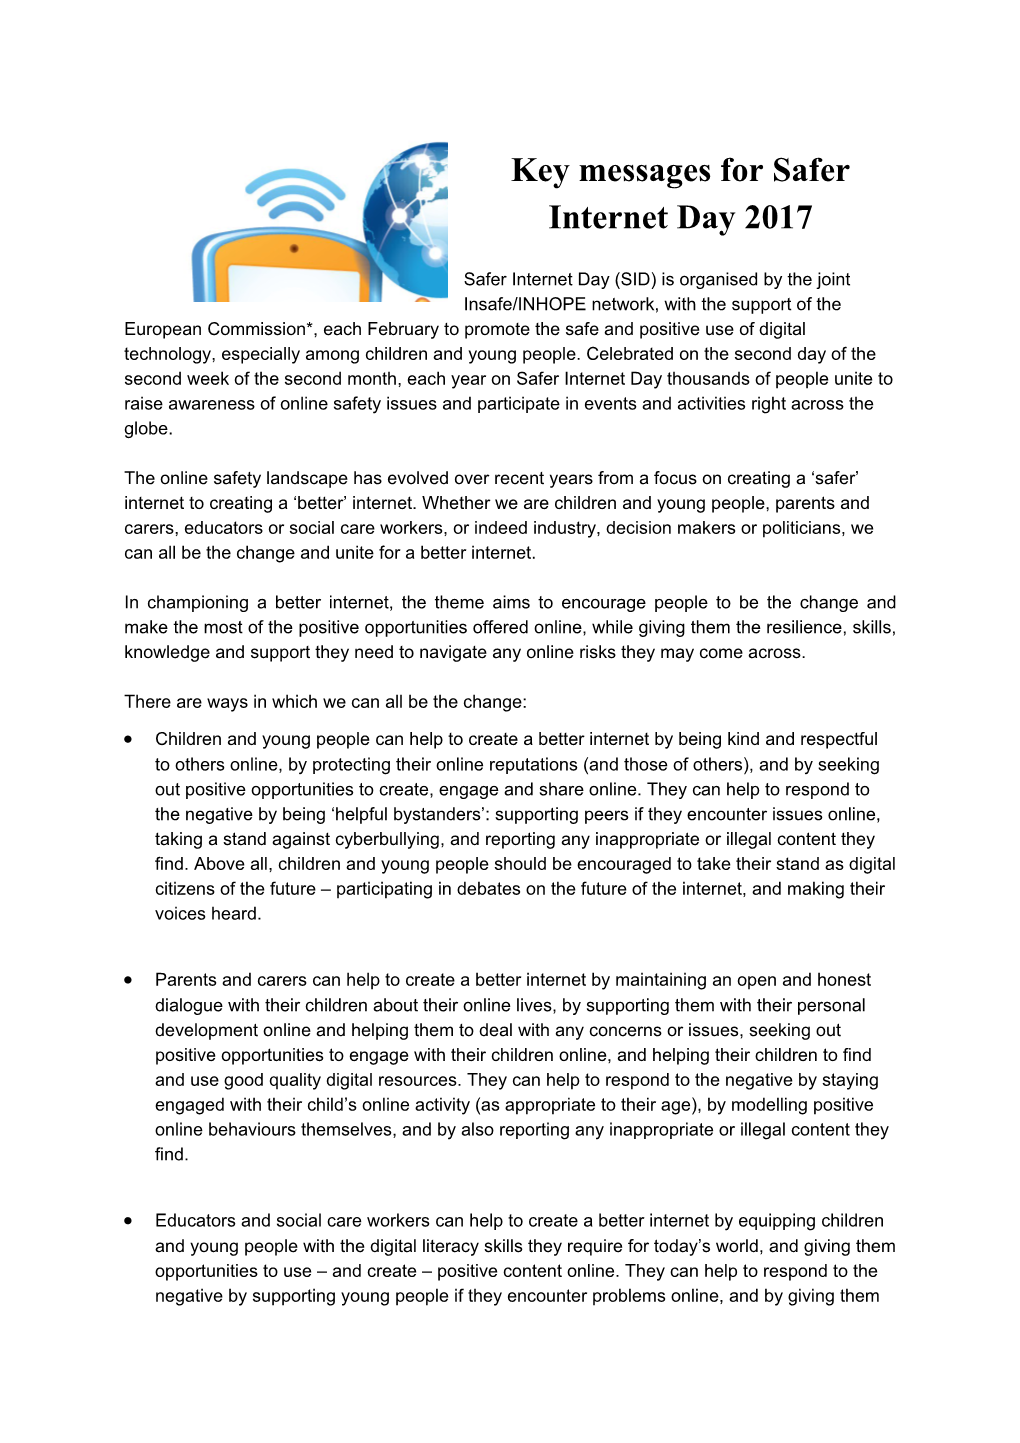 Key Messages for Safer Internet Day 2017